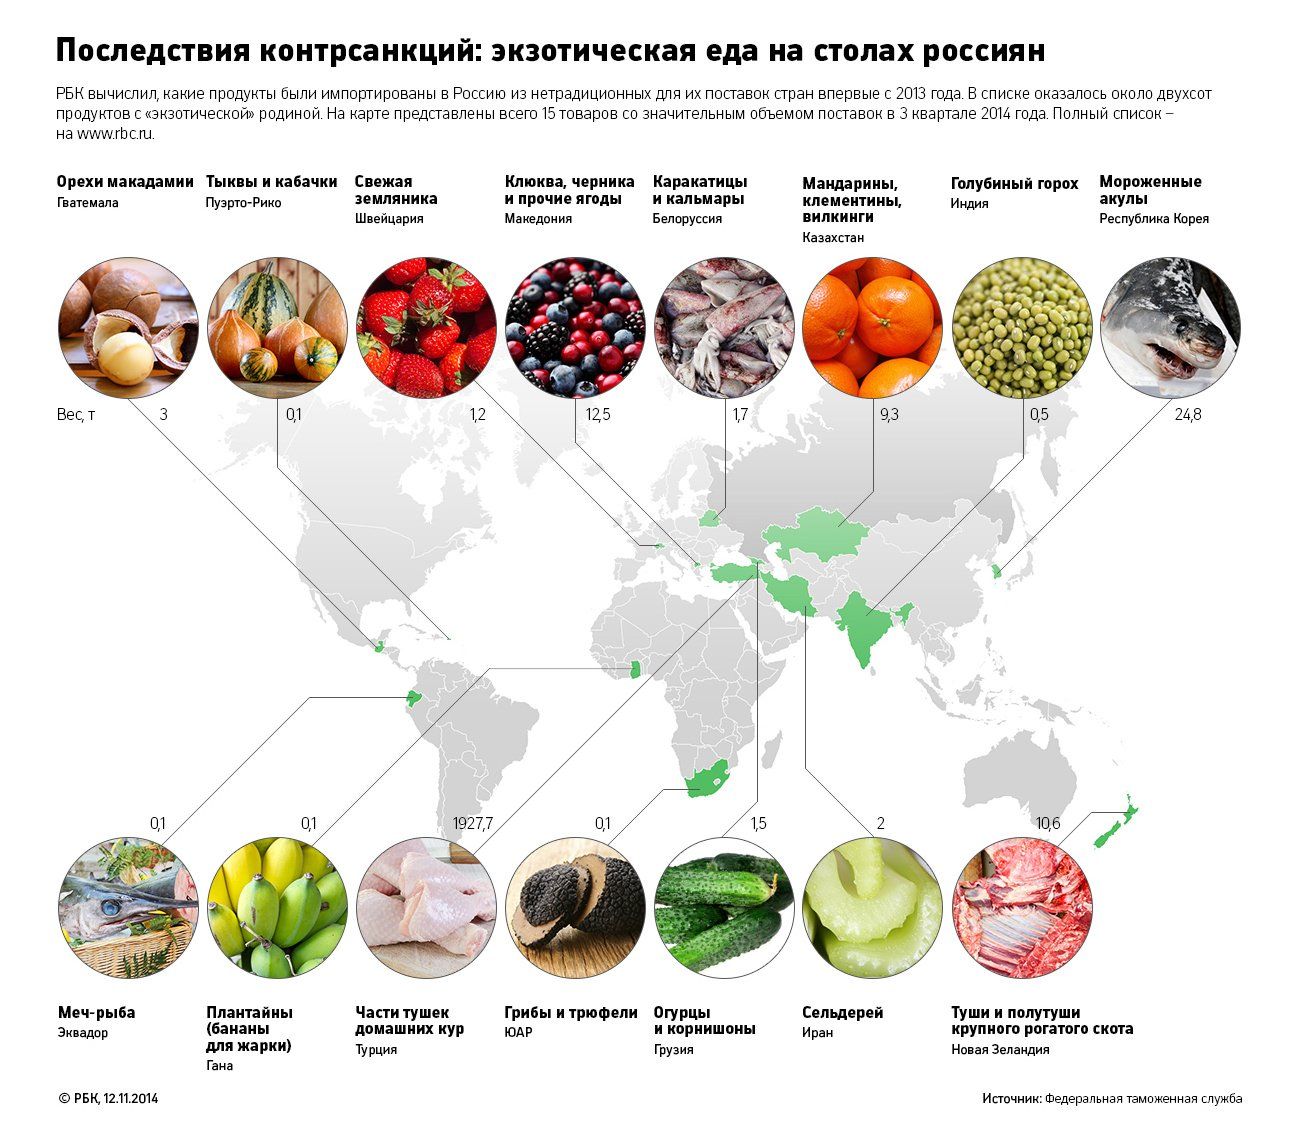 Какие продукты из европы в россии. Товары из других стран. Страны экспортеры продуктов питания. Карта потребления фруктов. Импорт продуктов питания в Россию.